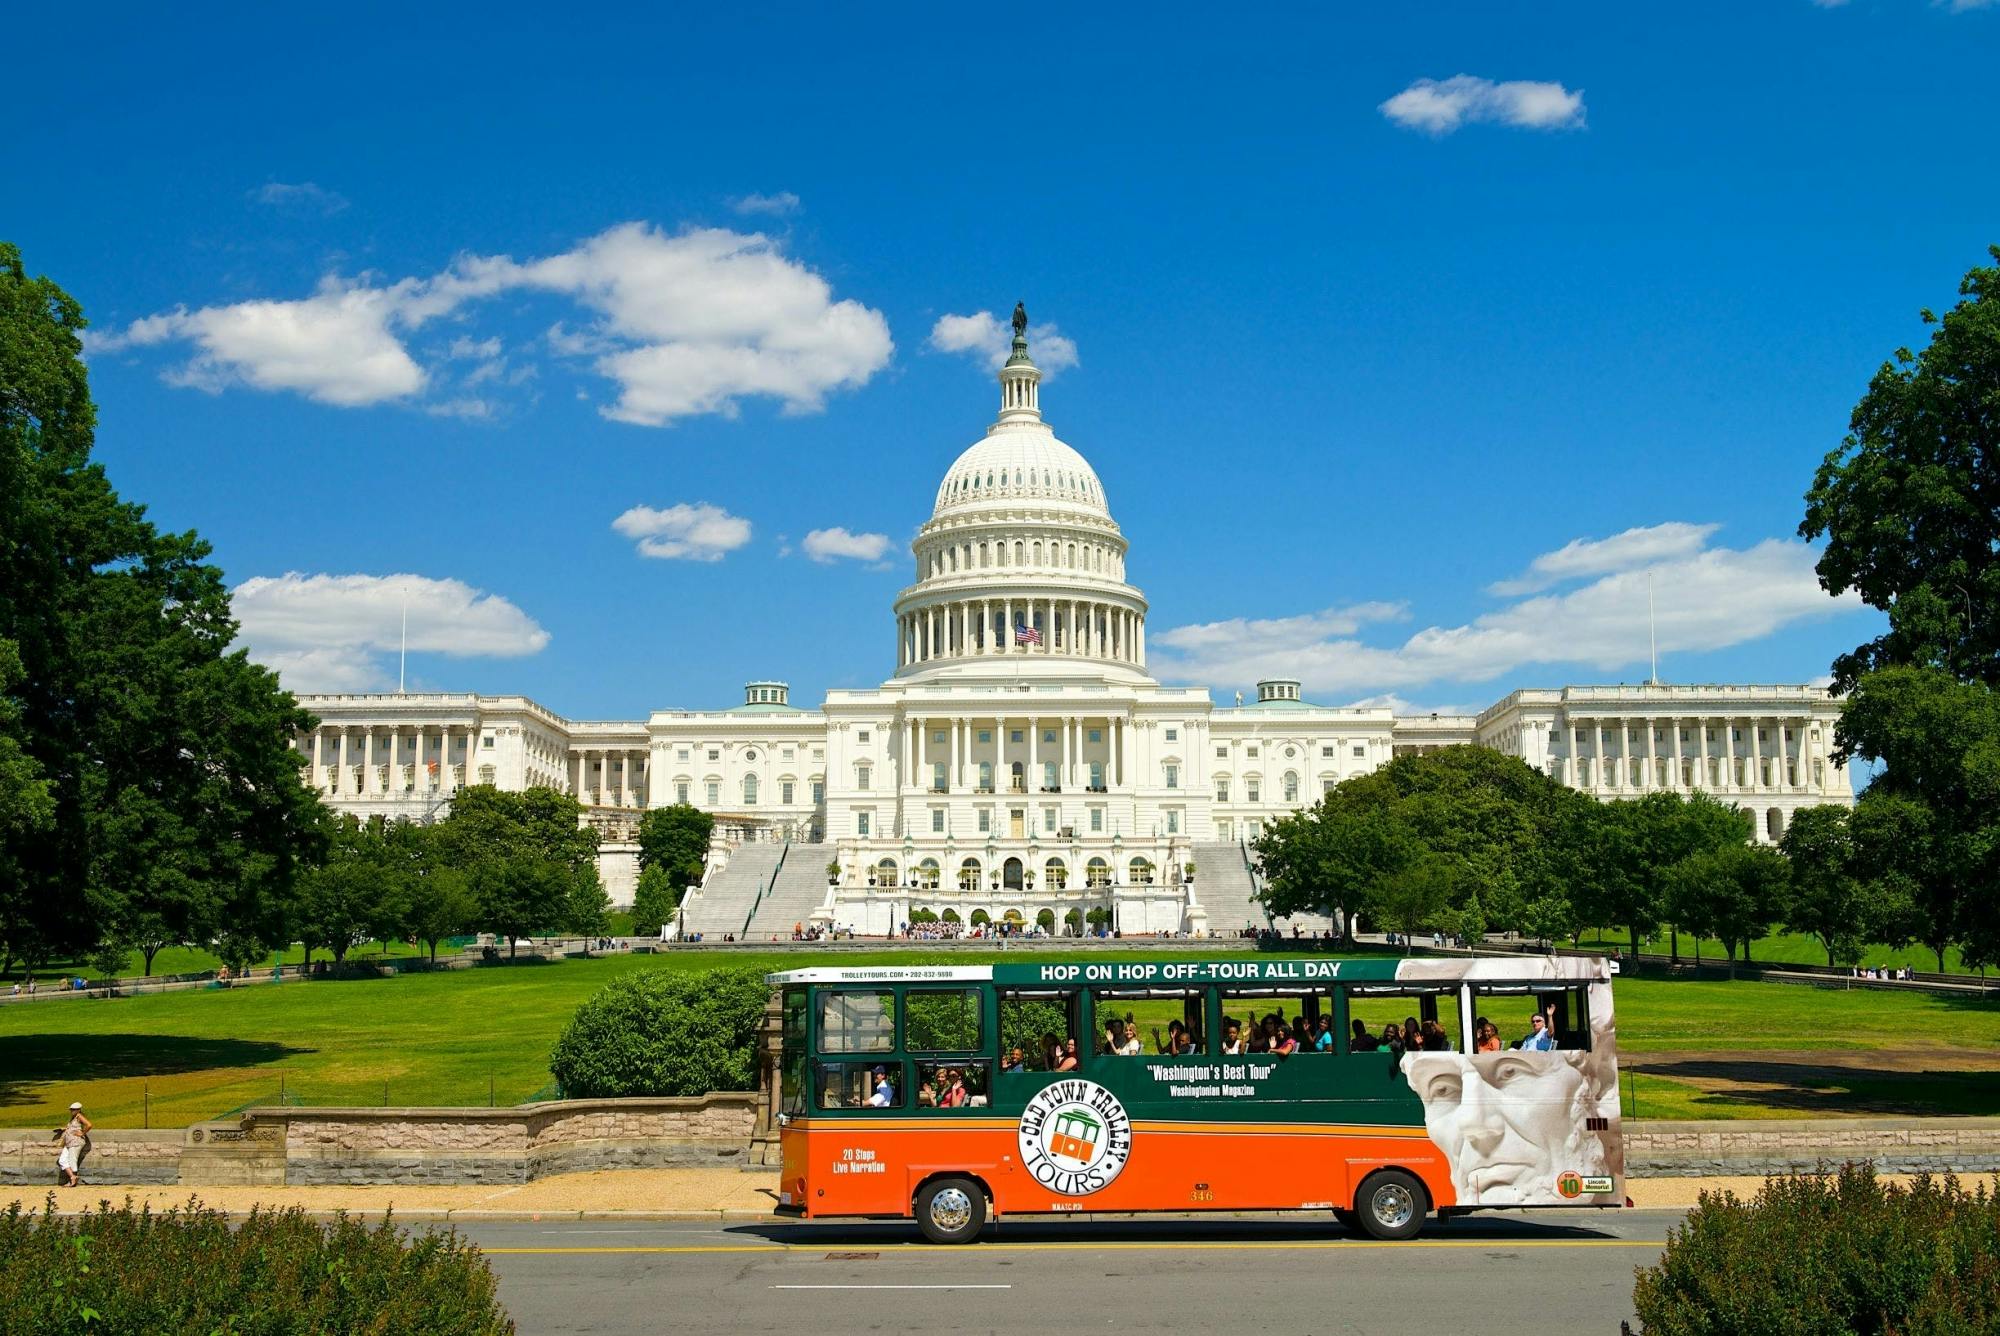 Hop-on-Hop-off-Touren mit dem Old Town Trolley durch Washington DC